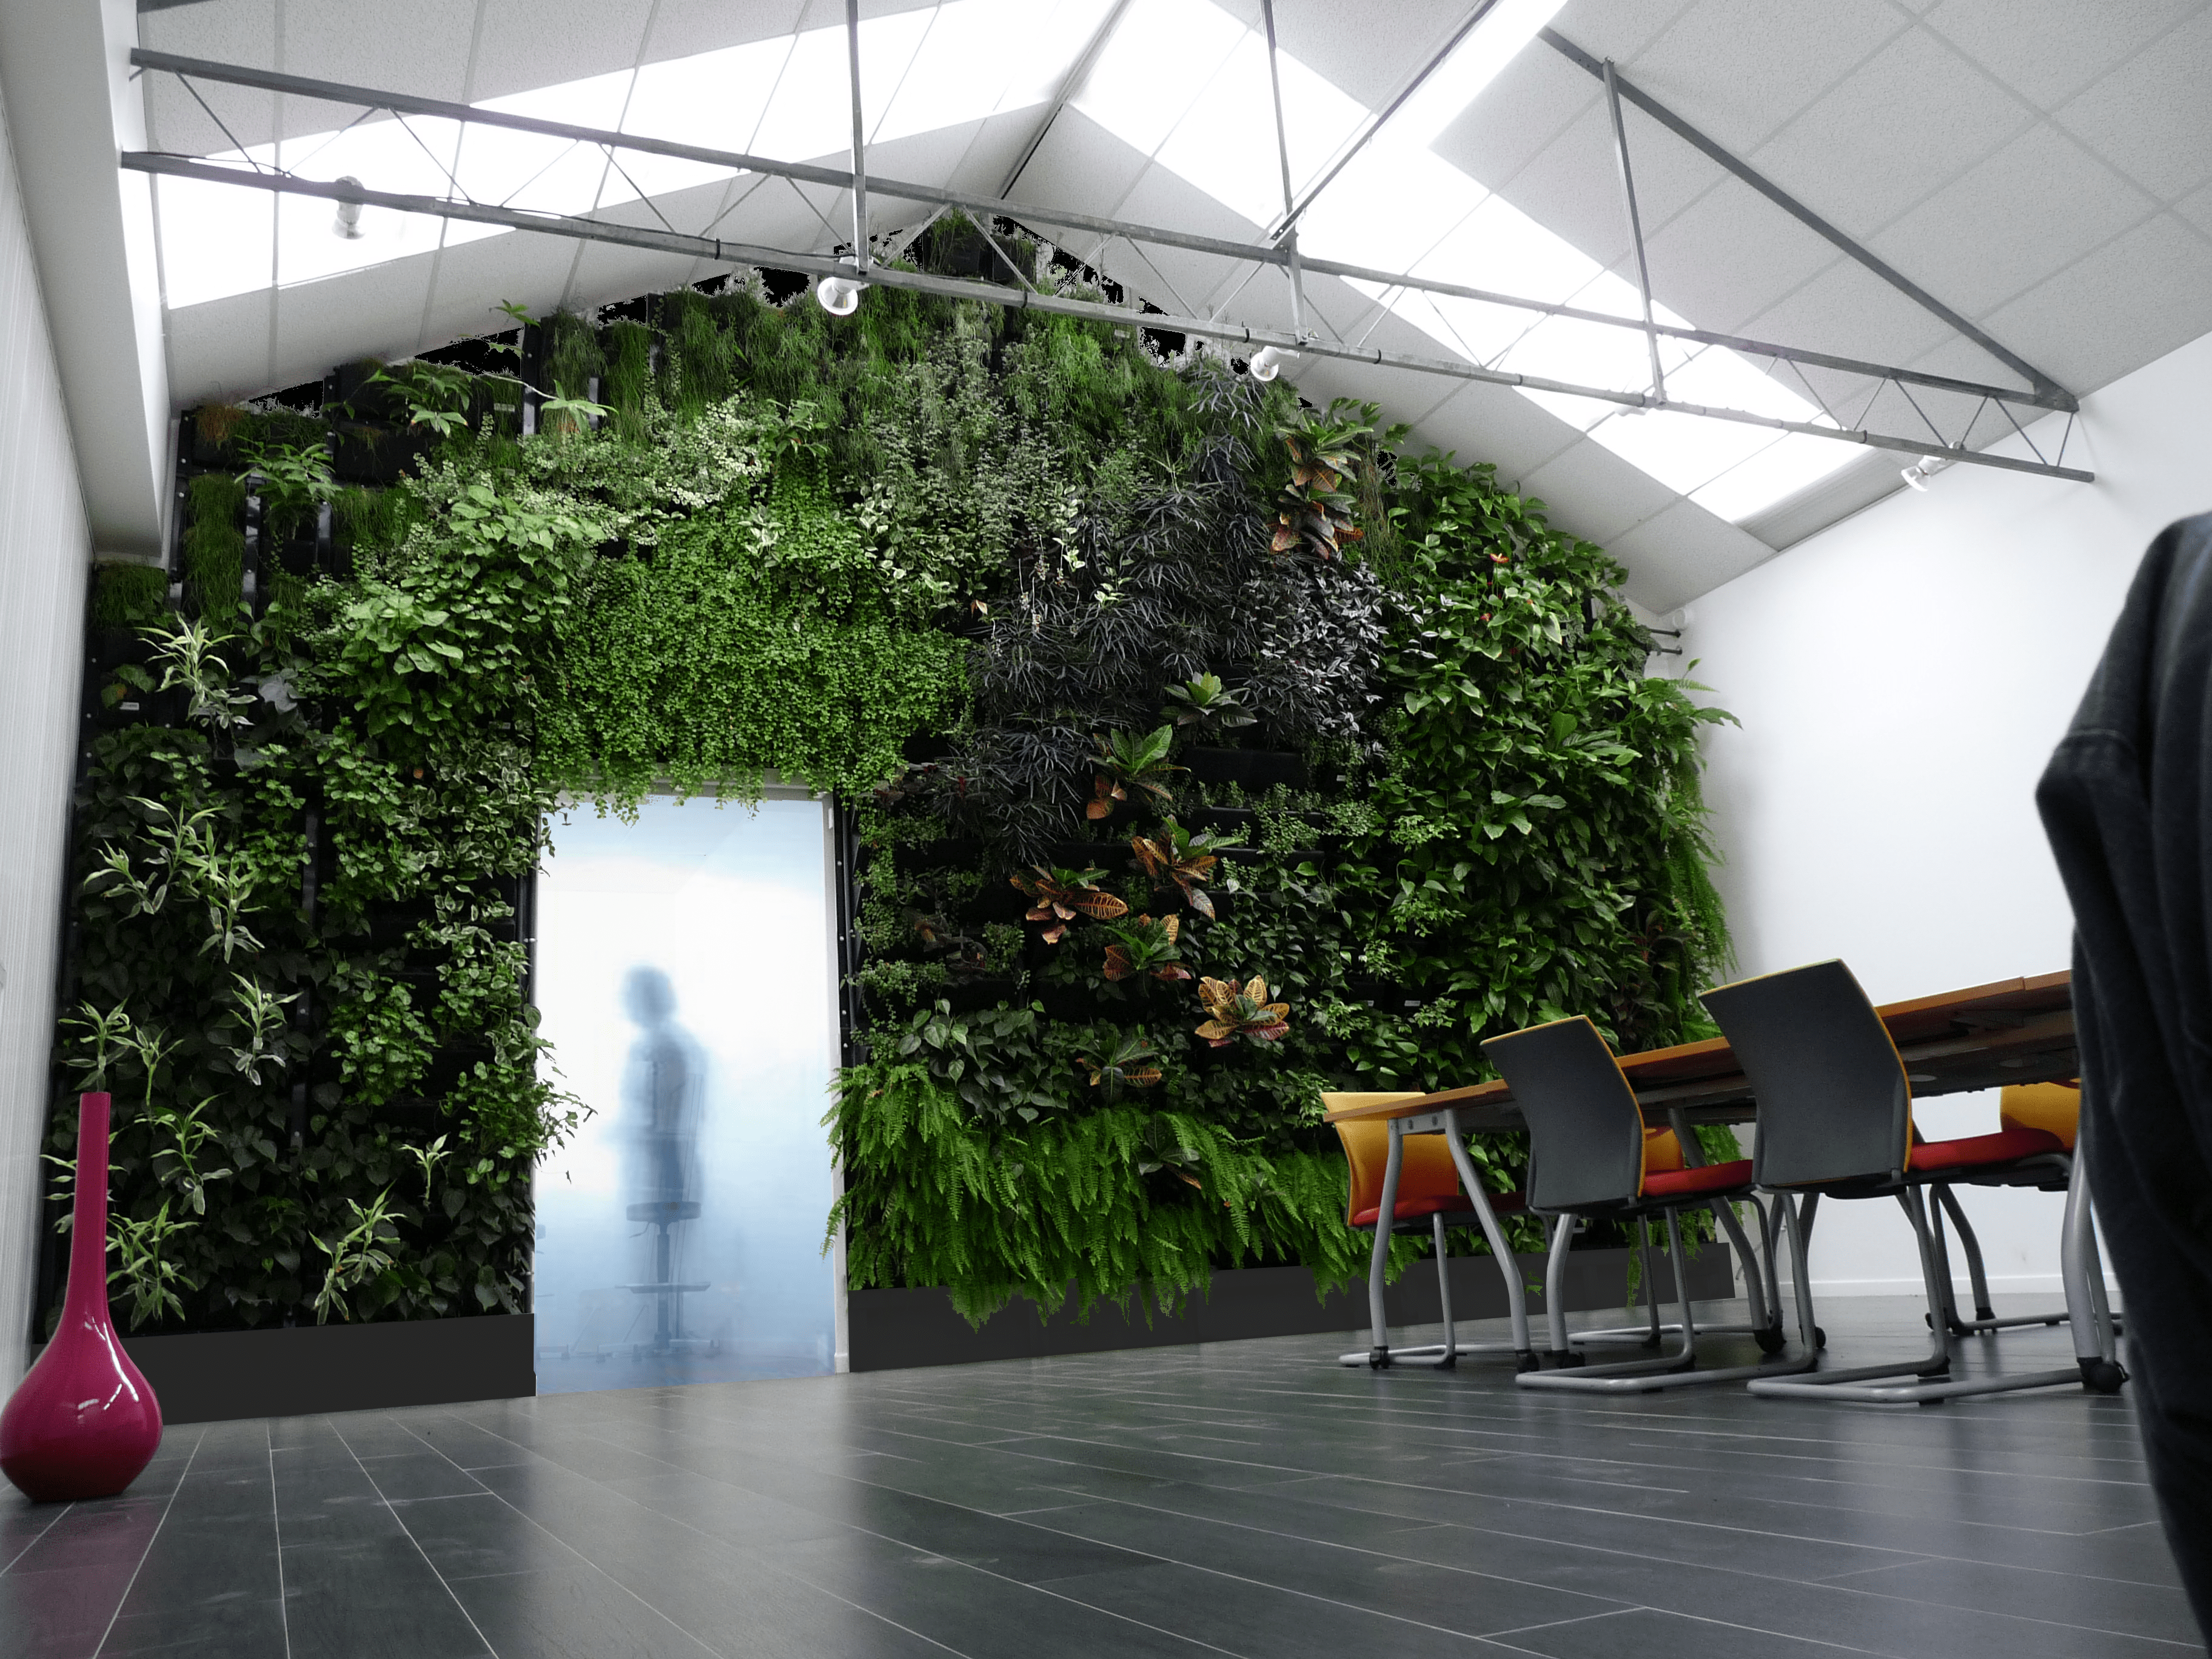 Living Walls The Future of Design  Wallemi Green Walls